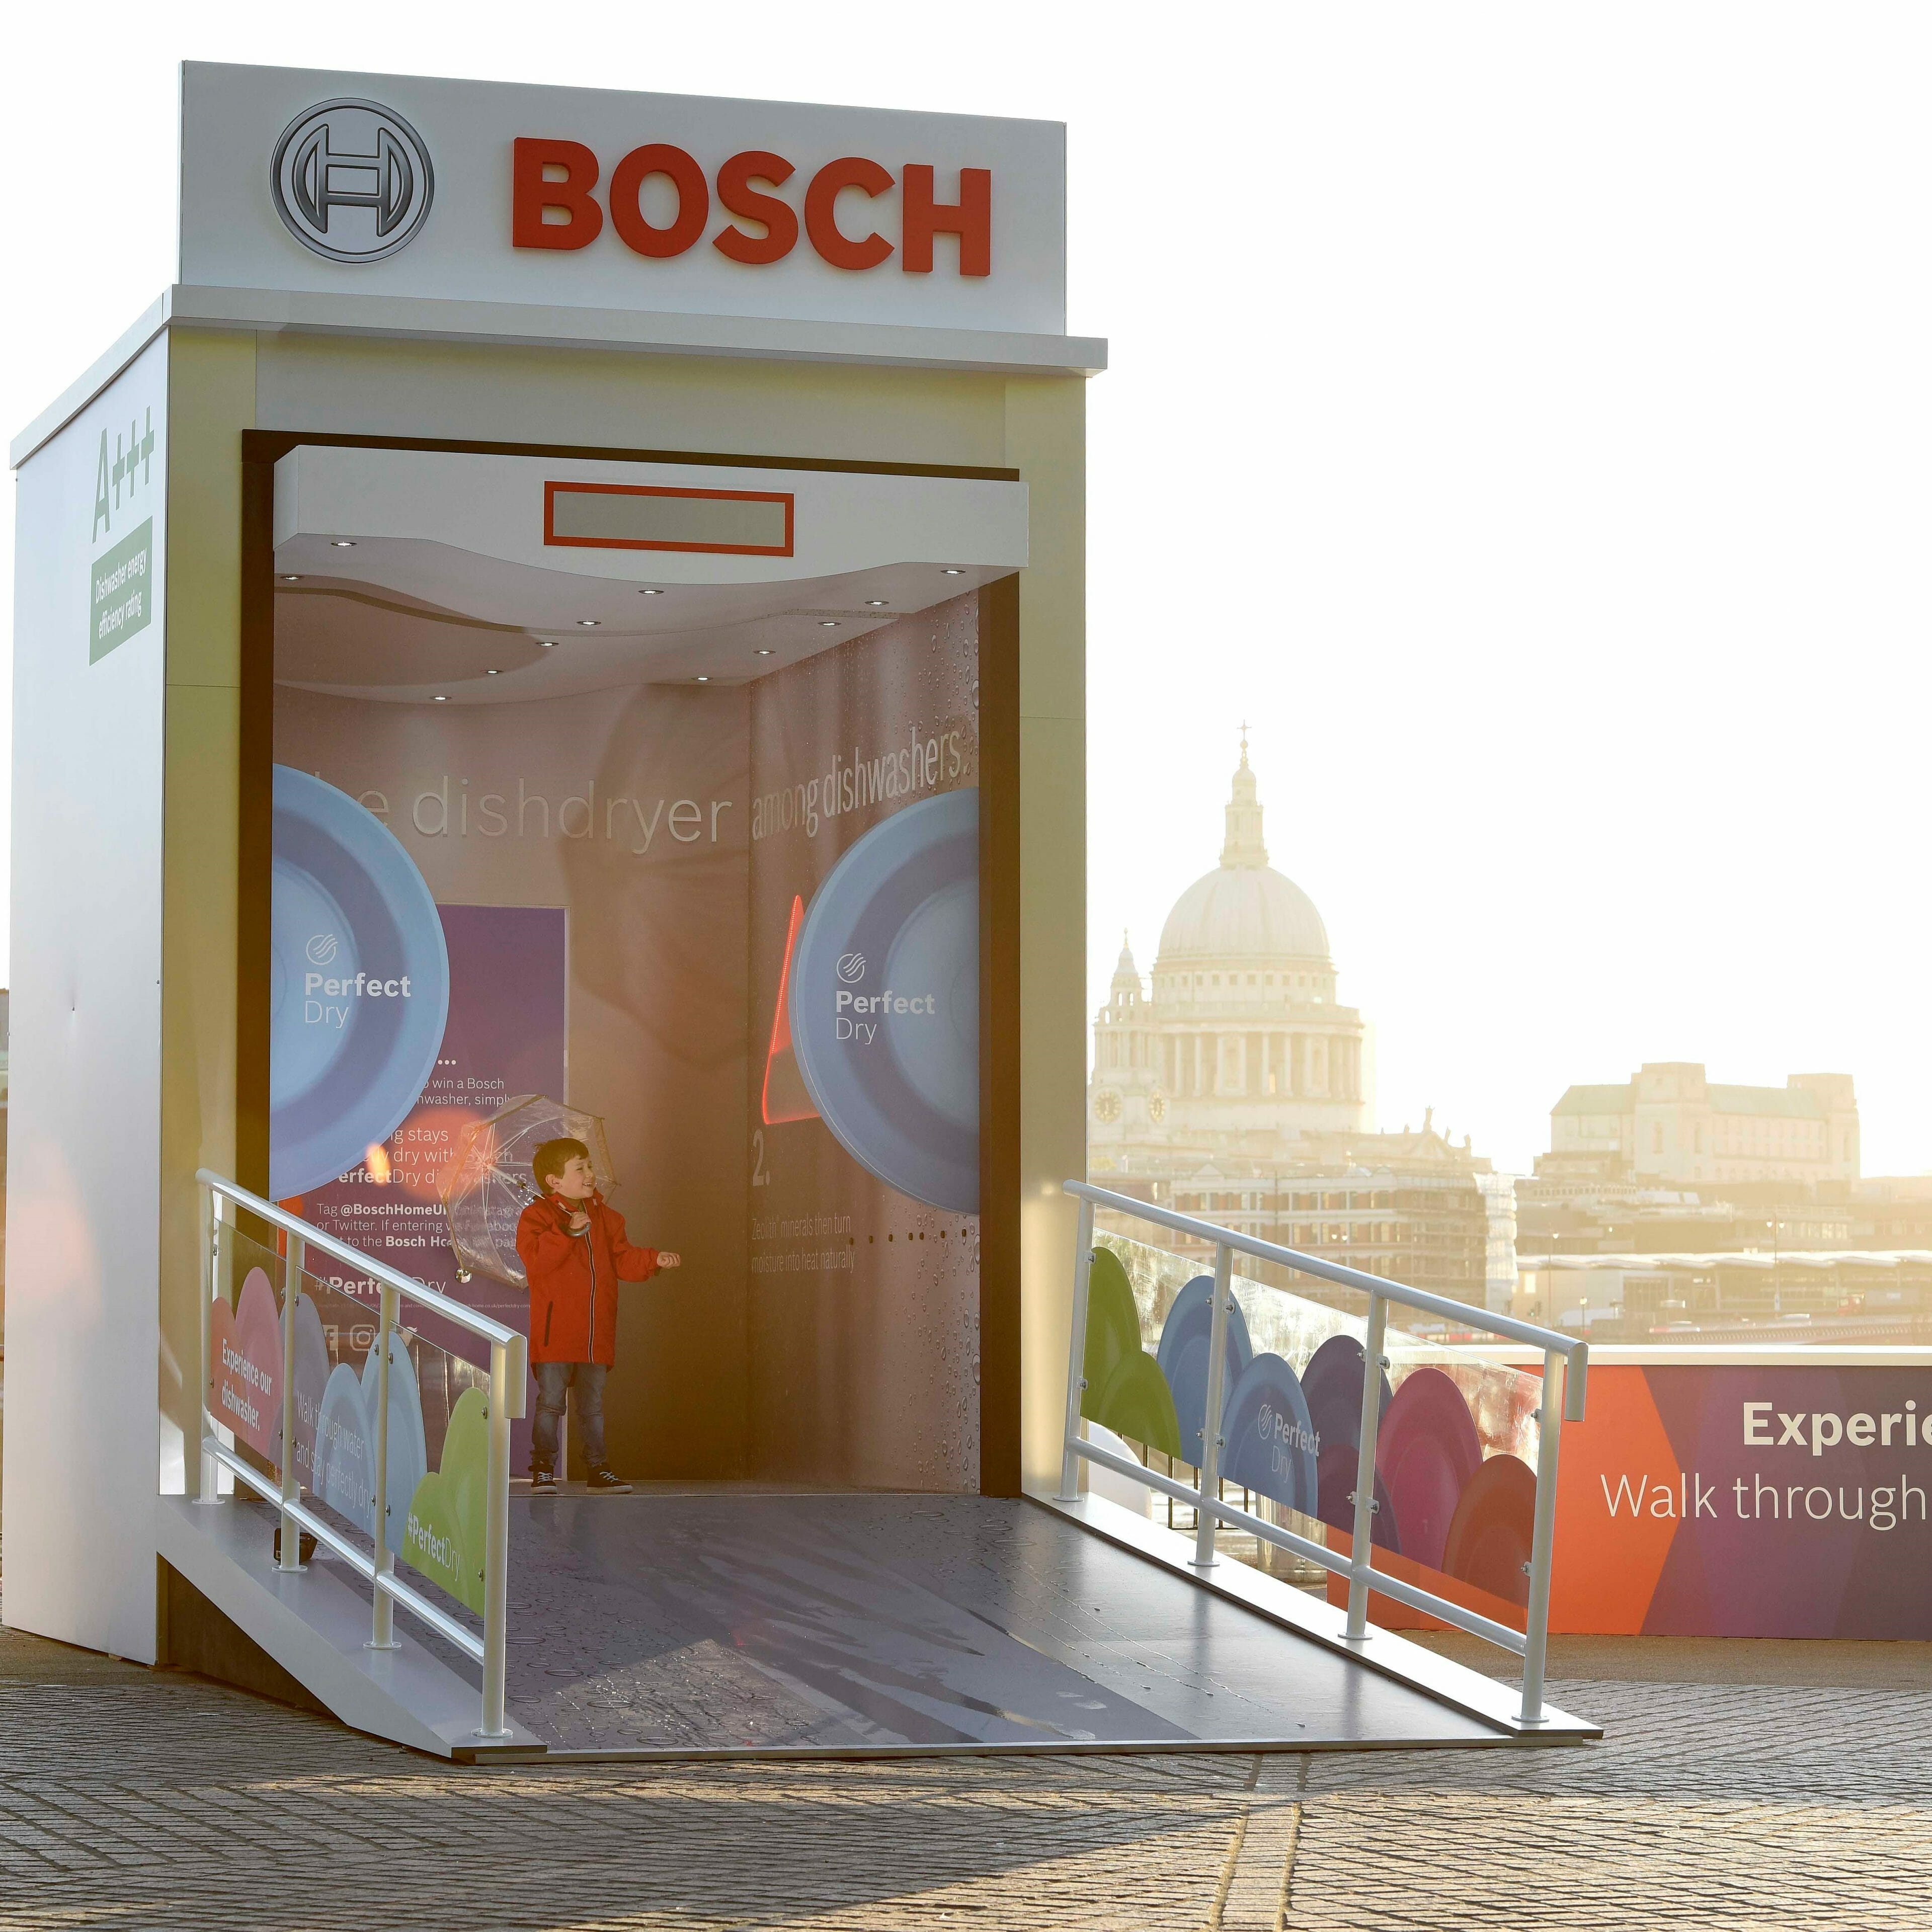 Bosch PR Agency